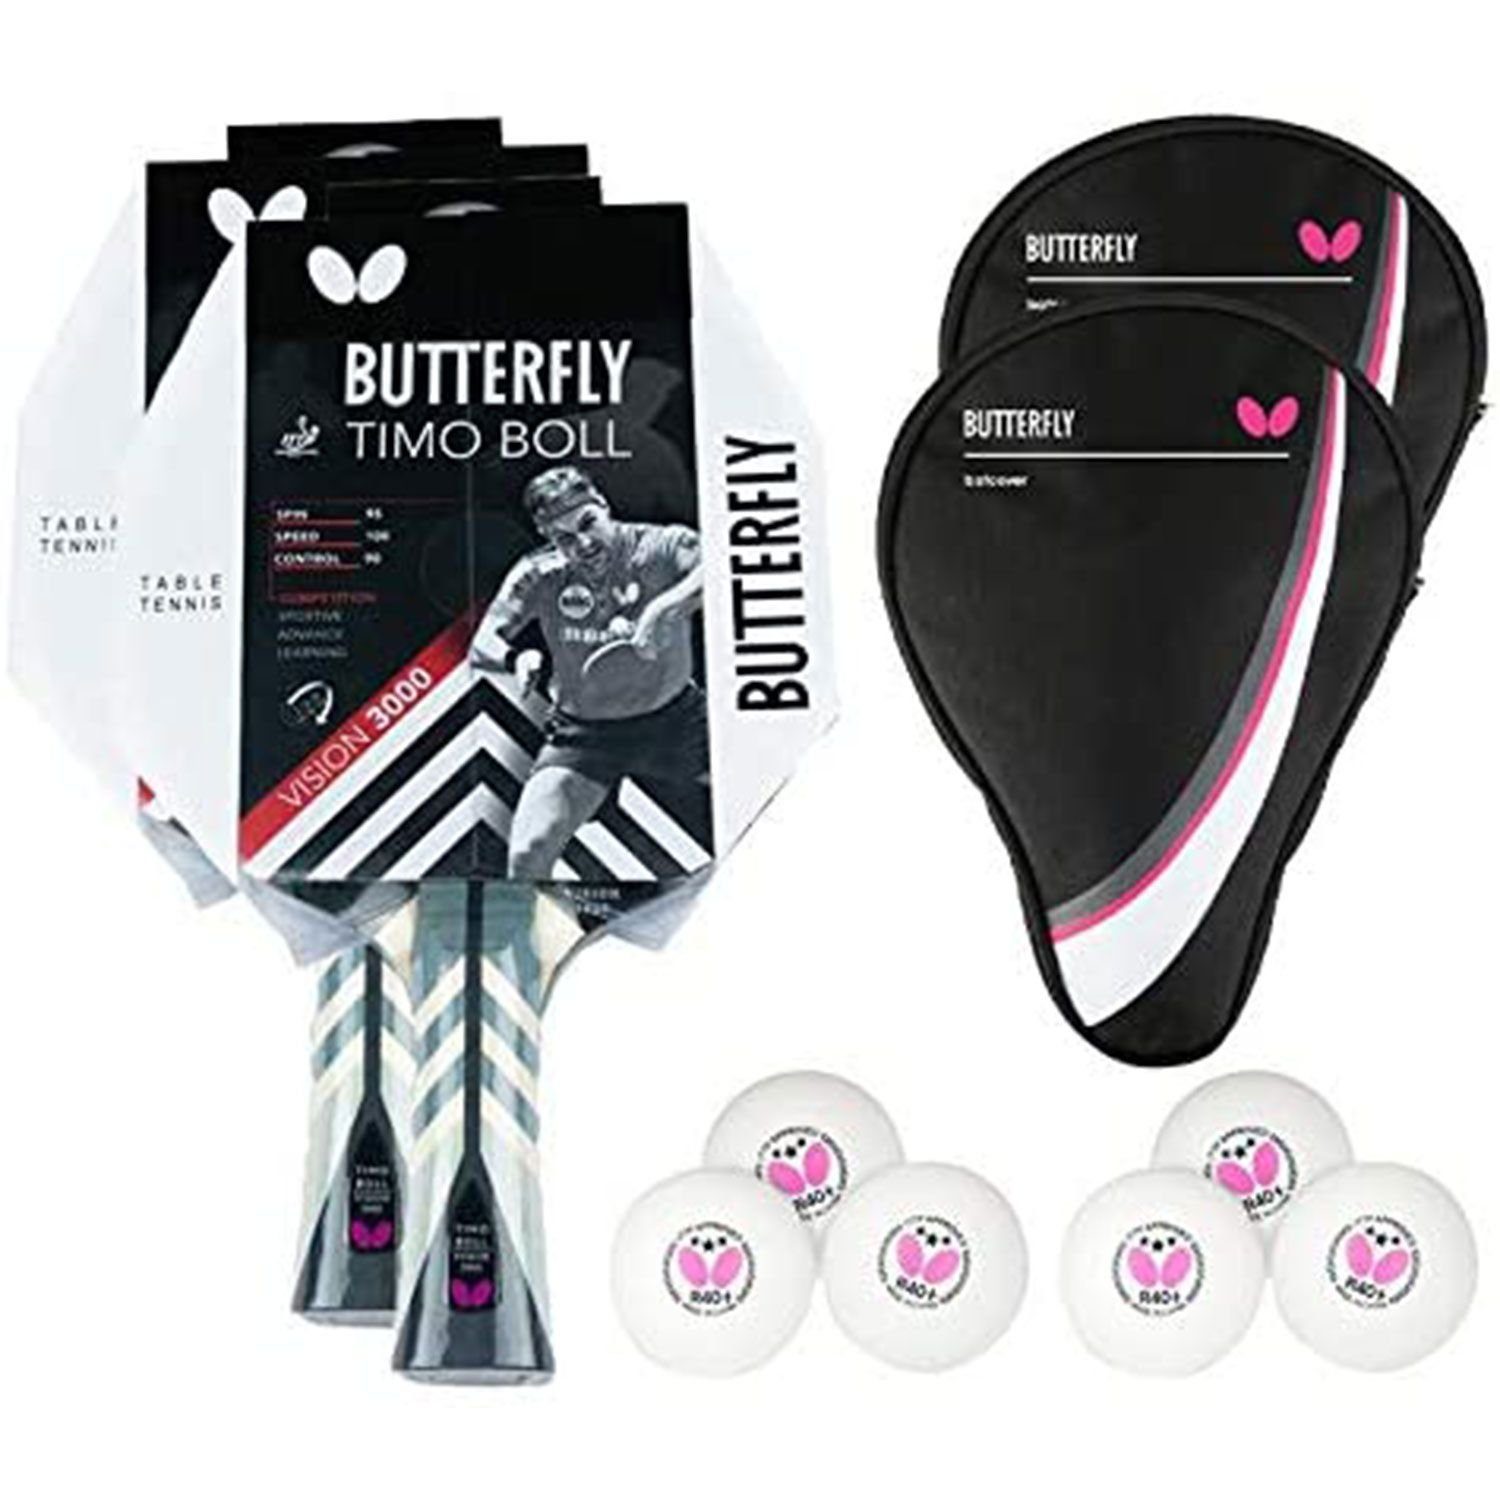 ist ein Schnäppchen Butterfly Tischtennisschläger 2x Timo Table Tischtennis 1 Case Vision + 3000 2x Tennis Drive Tischtennisset Bat Bälle, + Racket Set Schläger Boll